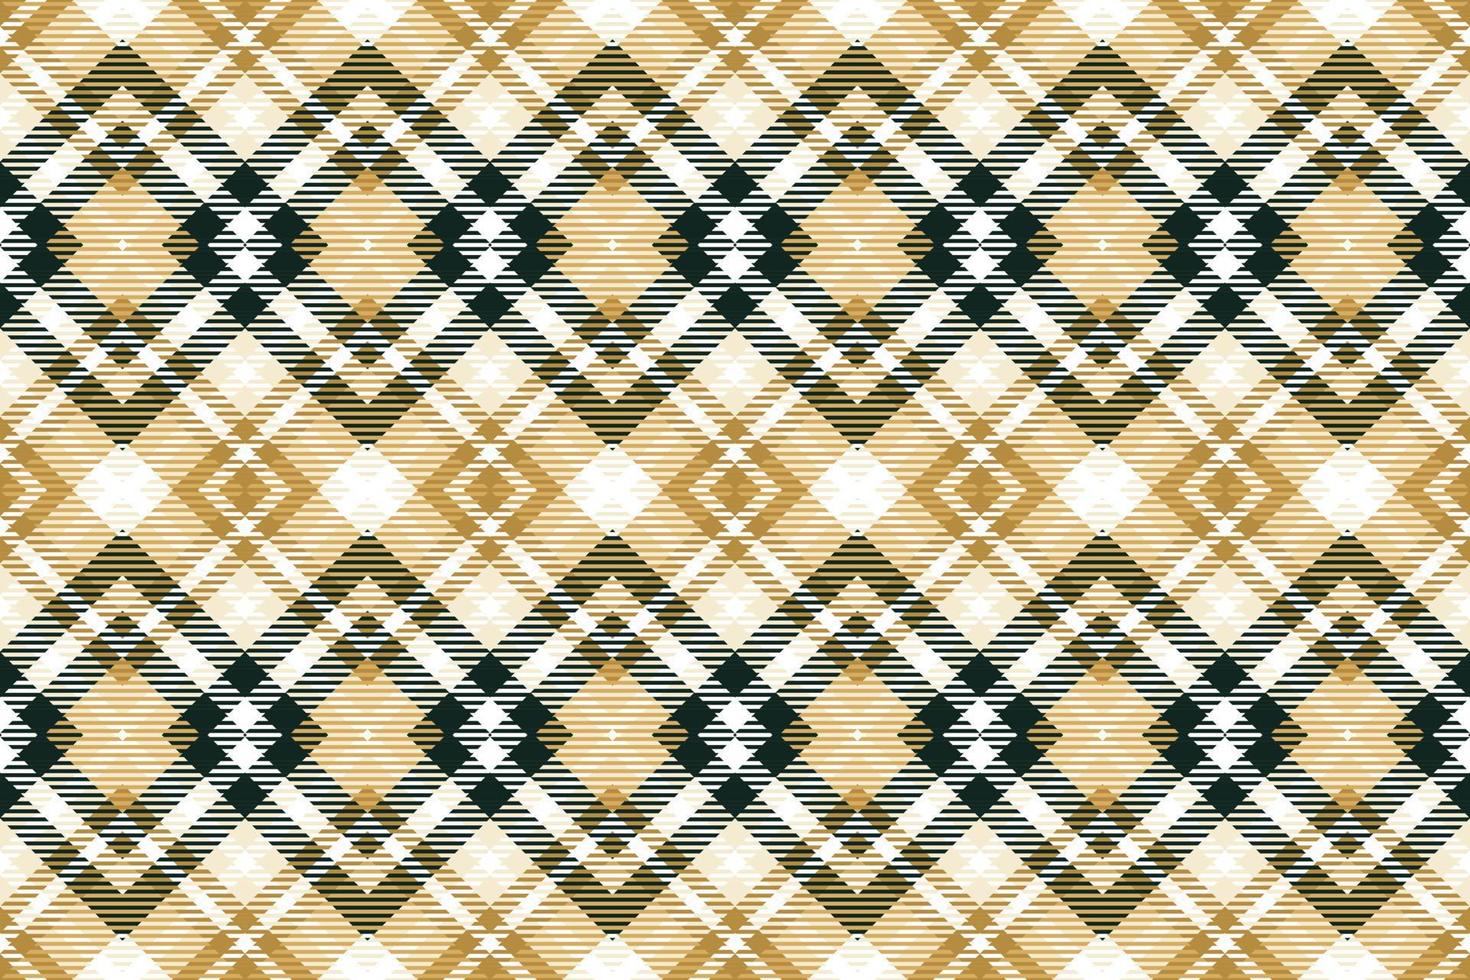 Scott Tartan Muster ist ein gemustert Stoff bestehend aus von criss gekreuzt, horizontal und Vertikale Bands im mehrere Farben.Plaid nahtlos zum Schal, Schlafanzug, Decke, Bettdecke, Kilt groß Schal. vektor